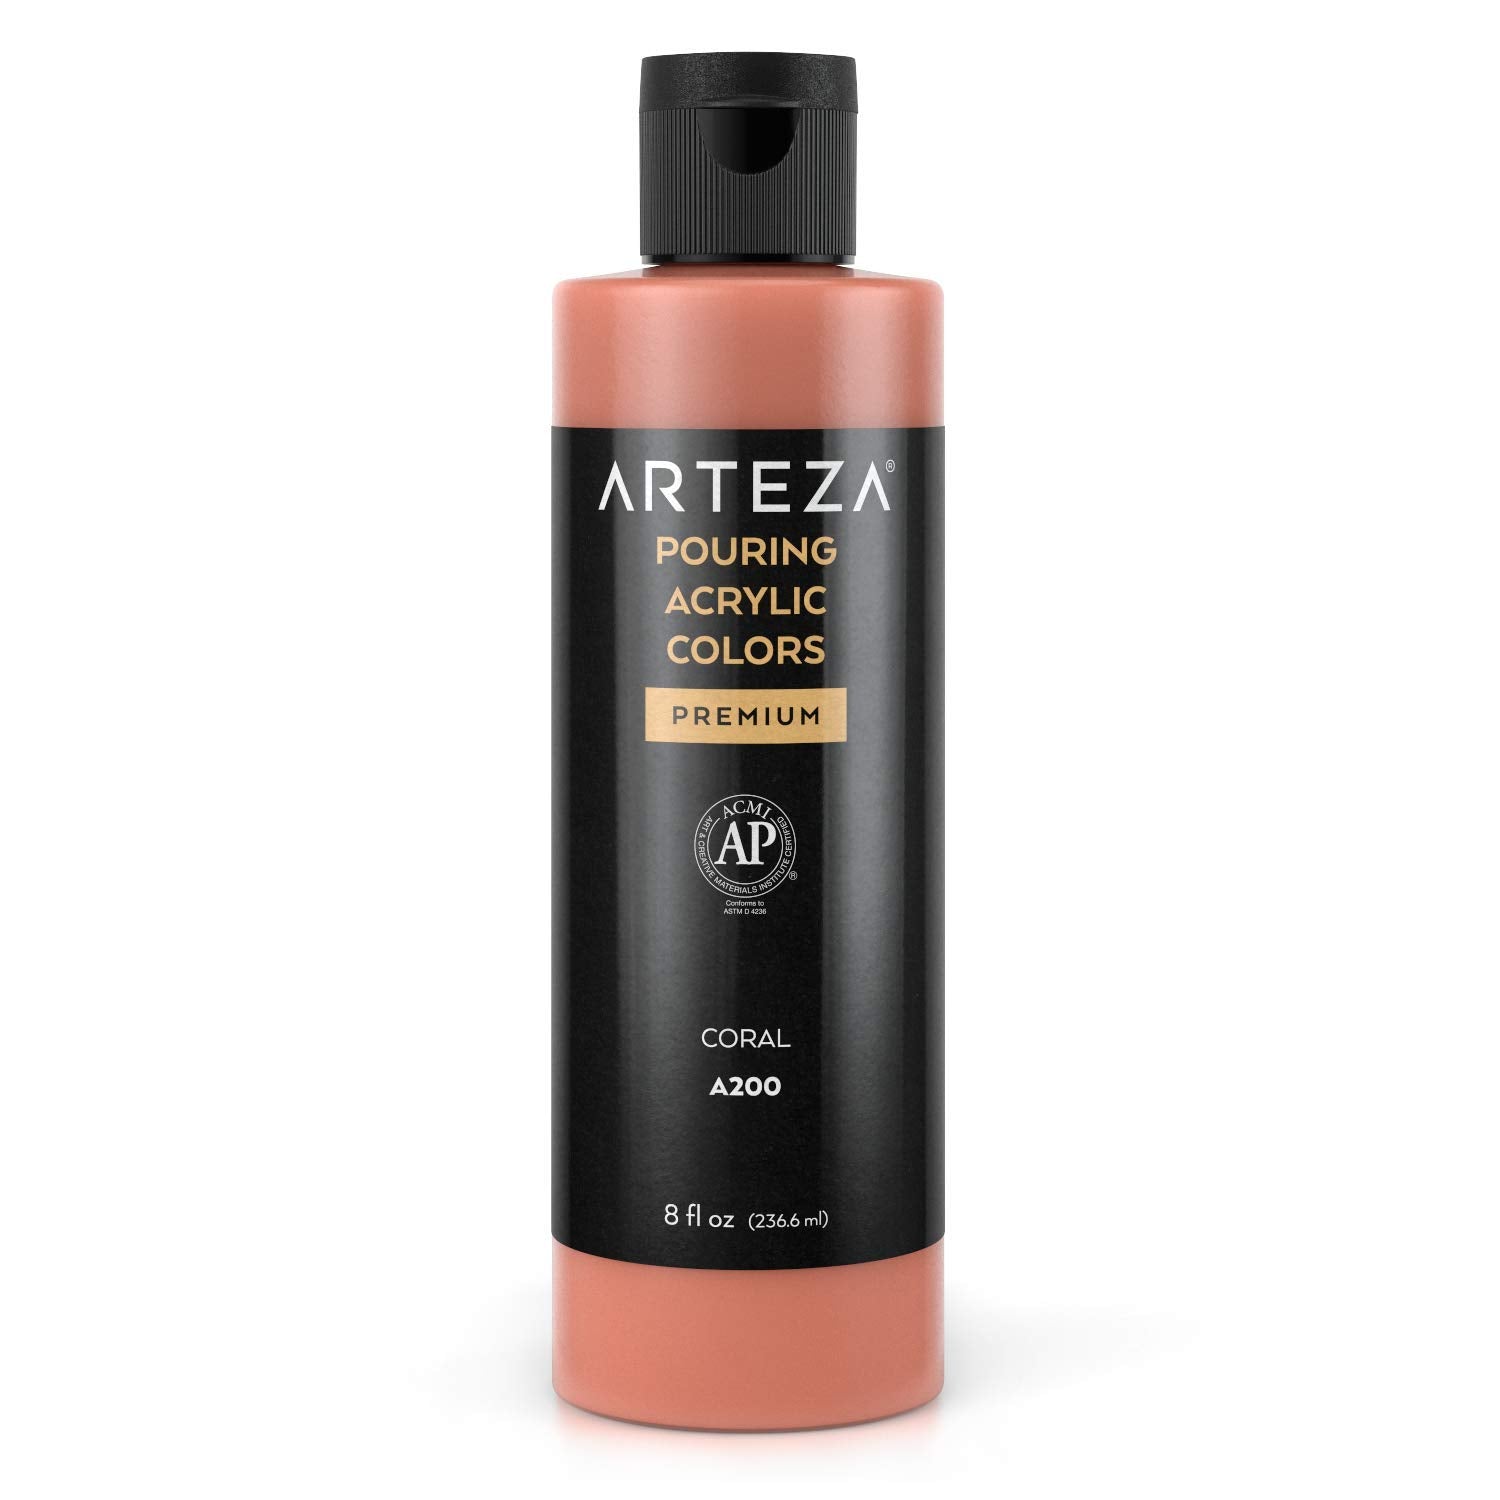 Arteza Pouring Acrylic Paint, 8oz Bottle - A200 Coral